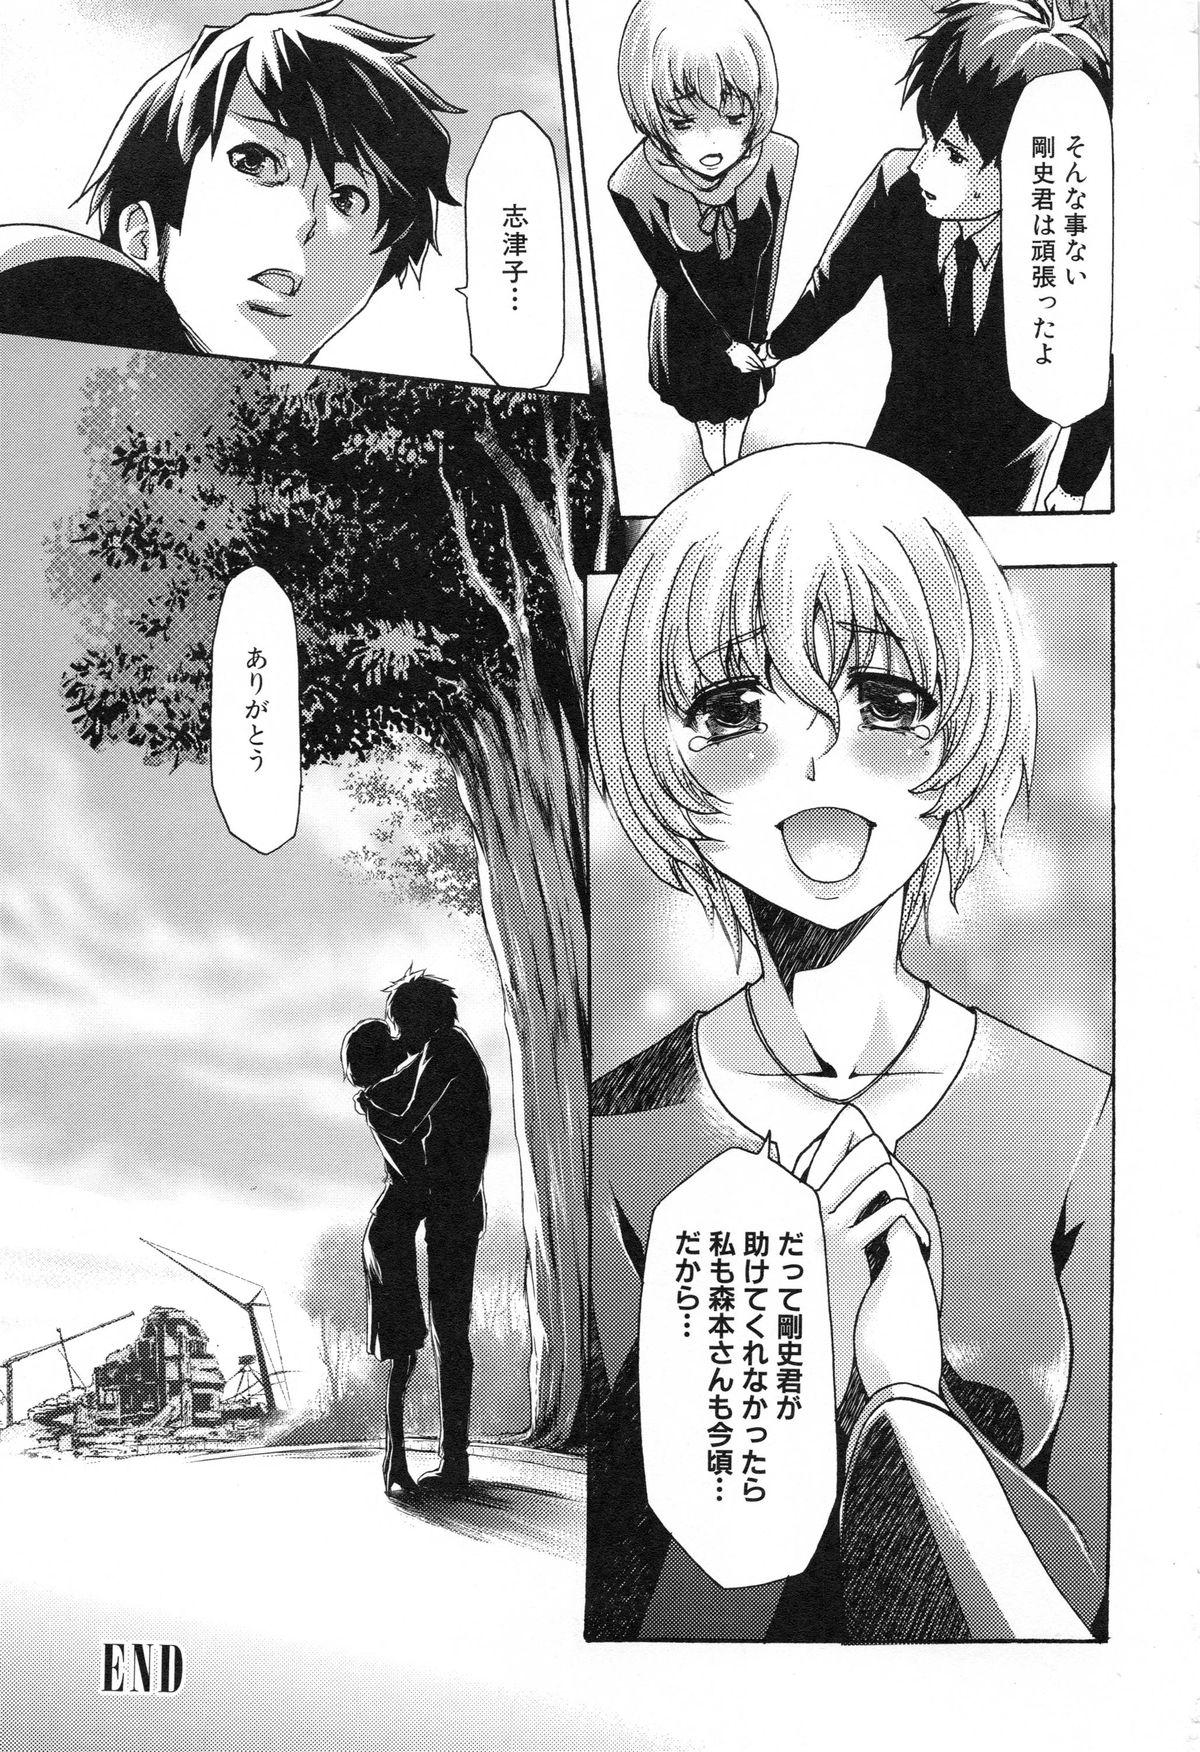 Hood Shinsetsu Ryouki no Ori 2nd Chapter Storyline - Page 265